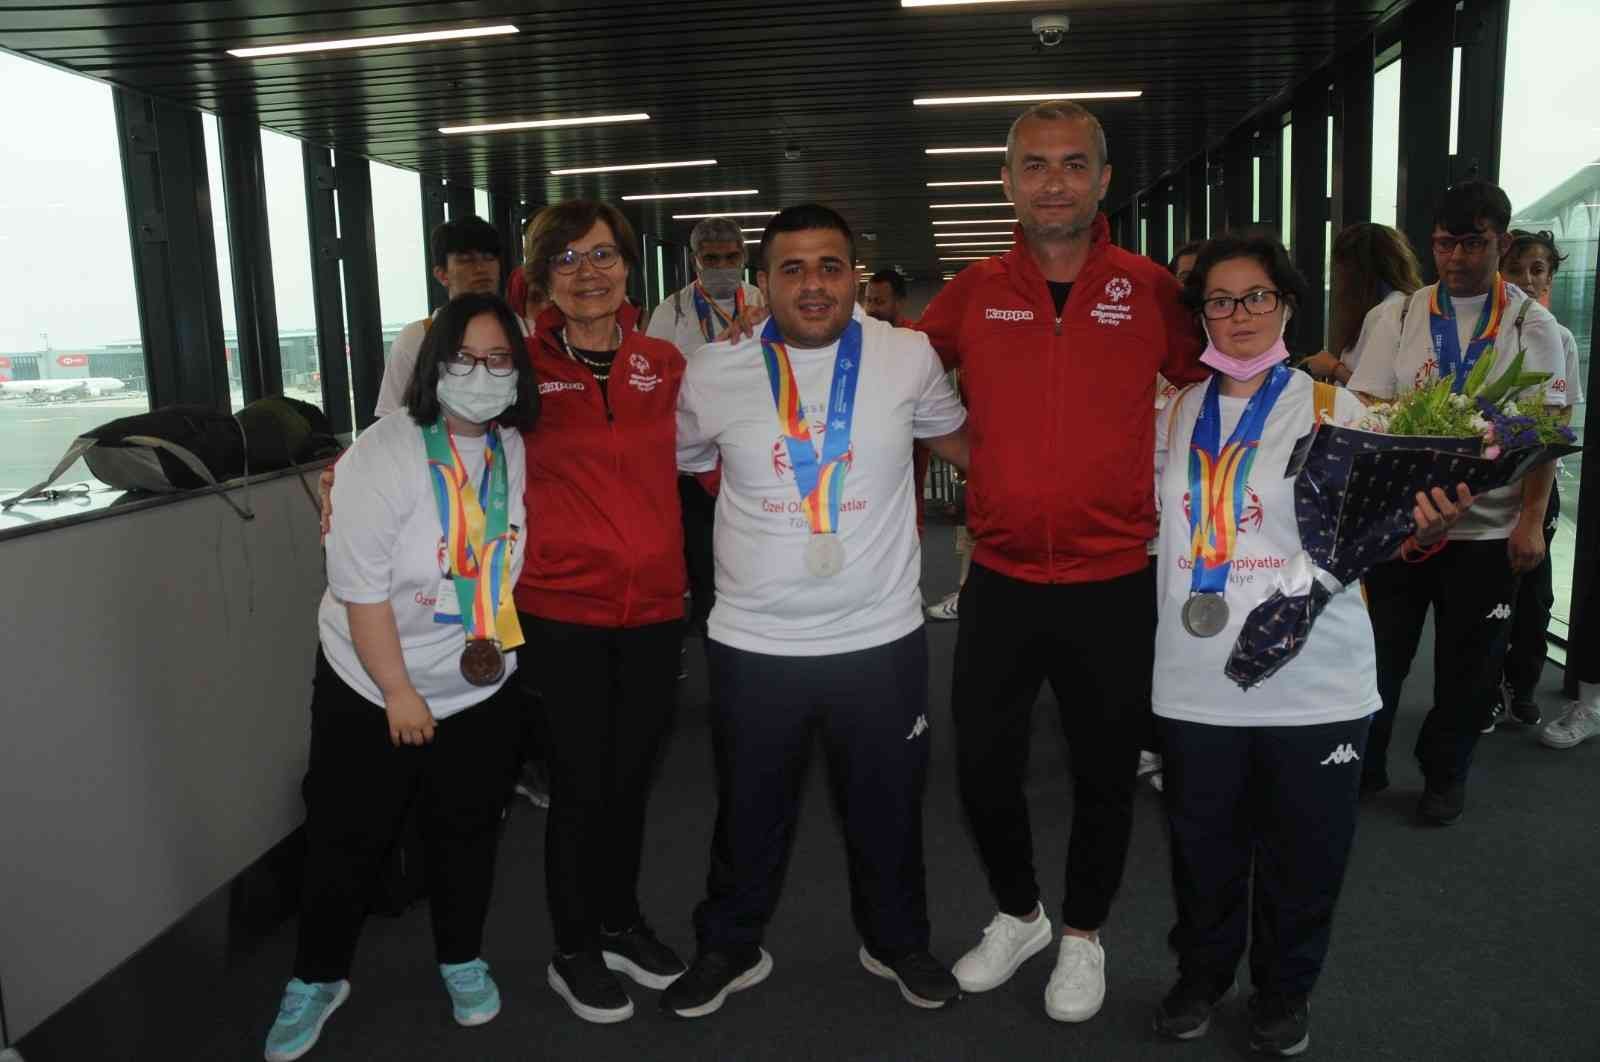 Malta’da düzenlenen Özel Olimpiyatlar Avrupa Oyunları’nda 21 madalya elde eden Özel Olimpiyatlar Türkiye sporcuları, yurda döndü. Malta’da 13-18 ...